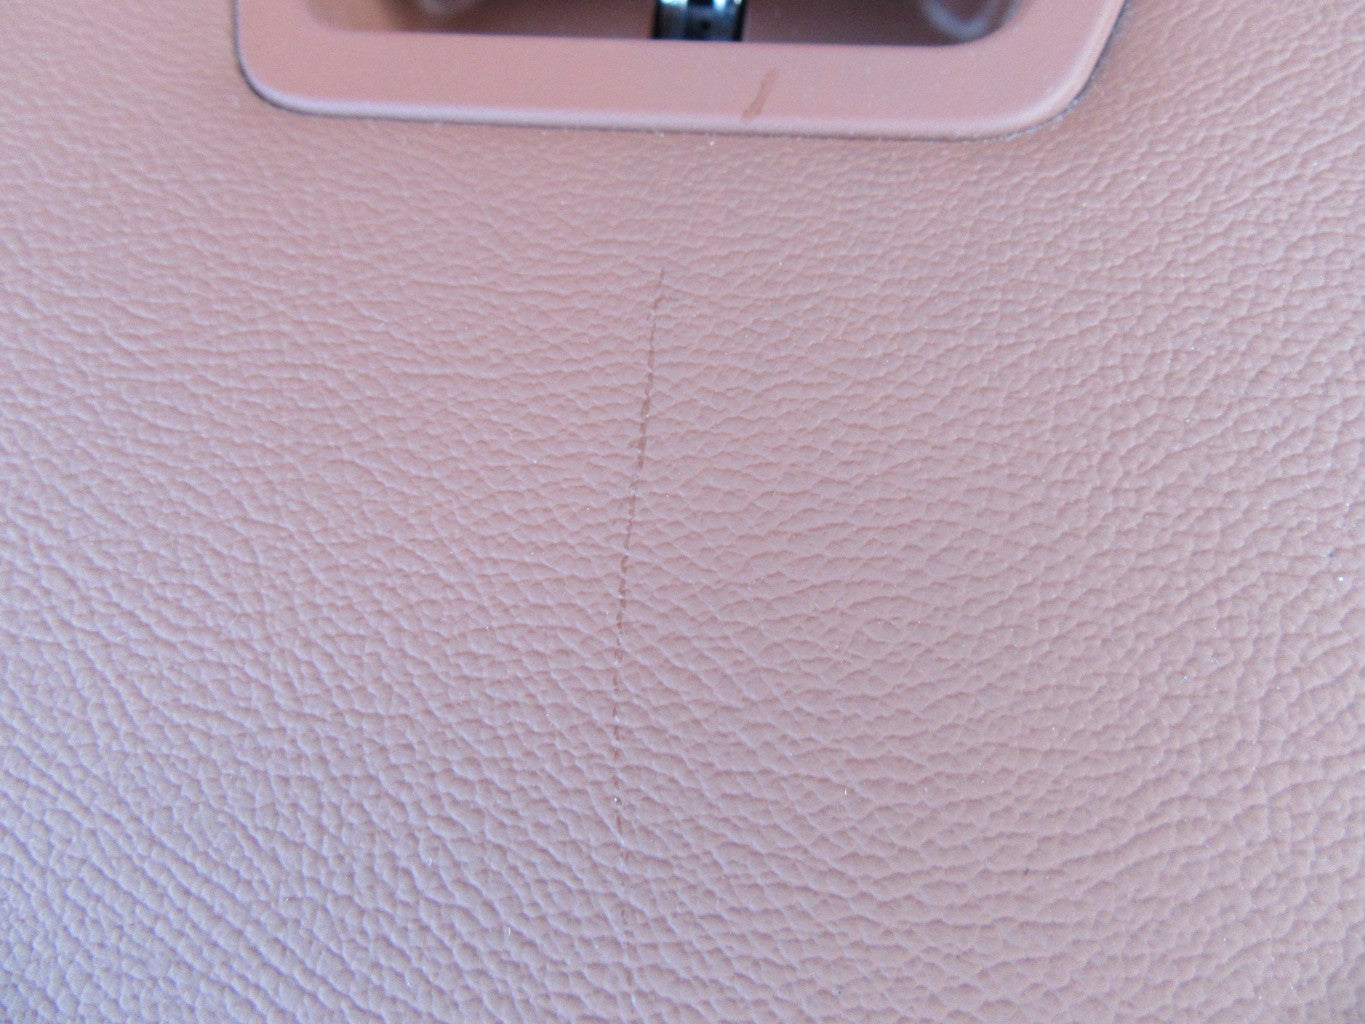 Maserati Quattroporte glove compartment box brown #0119